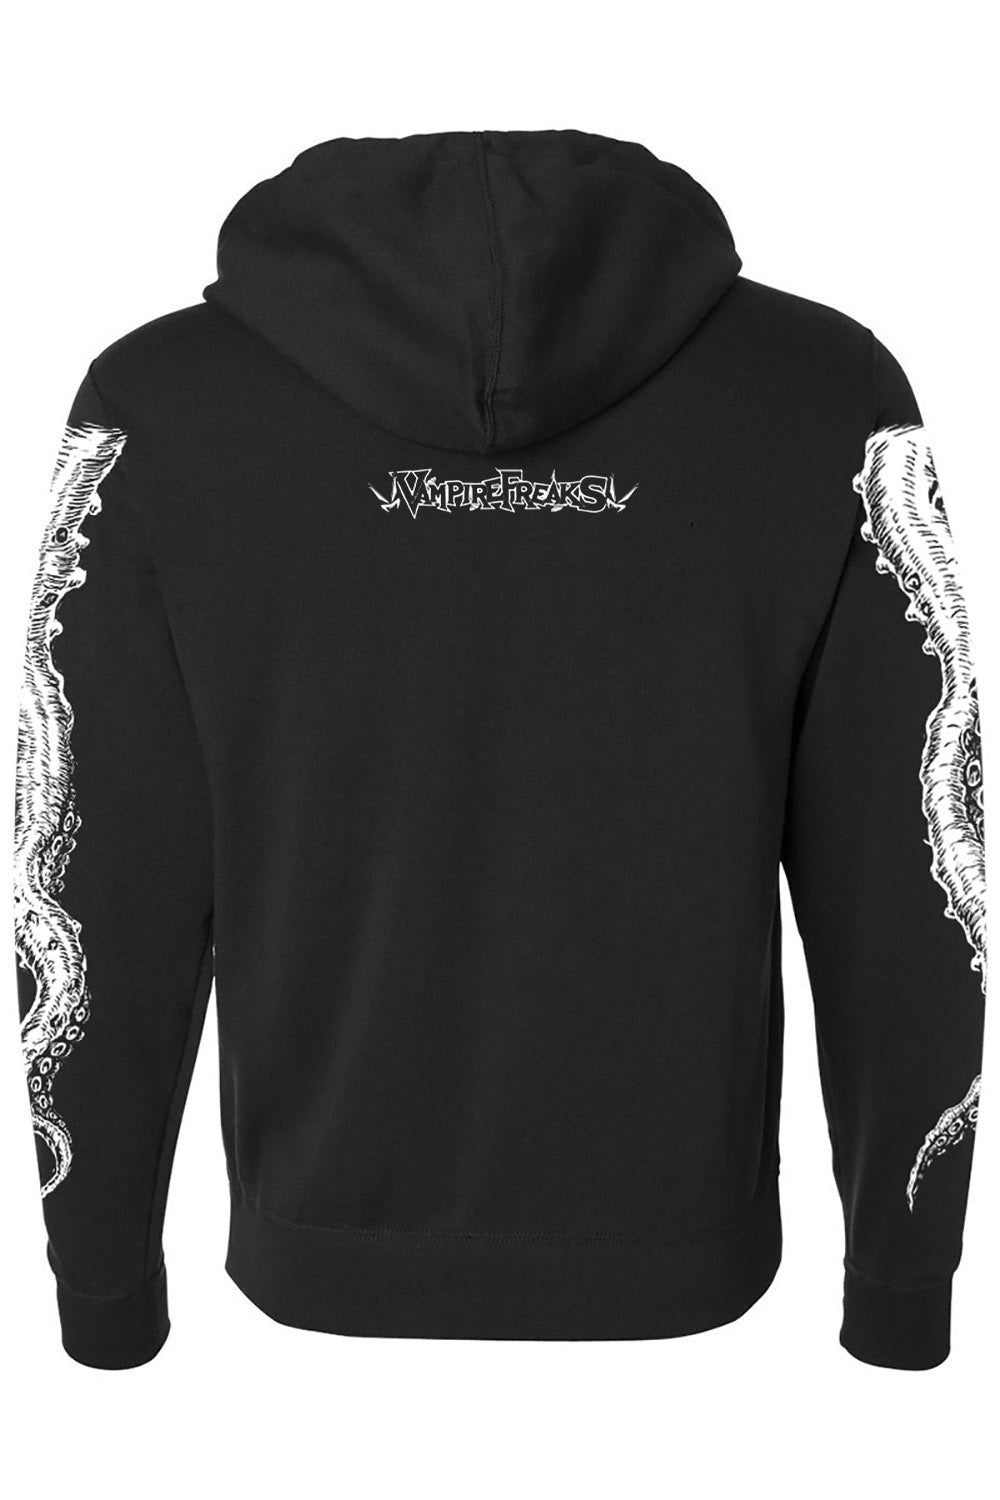 gothic Cthulhu religious gothic hoodie jacket